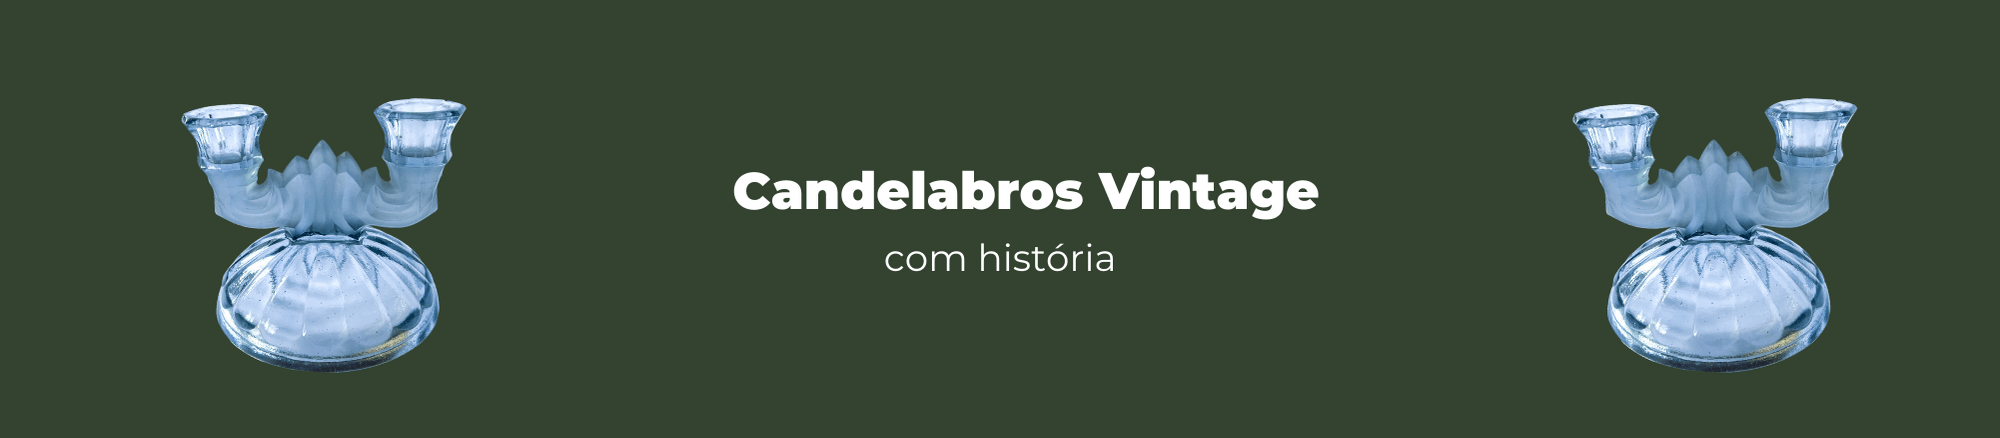 Candelabros Vintage